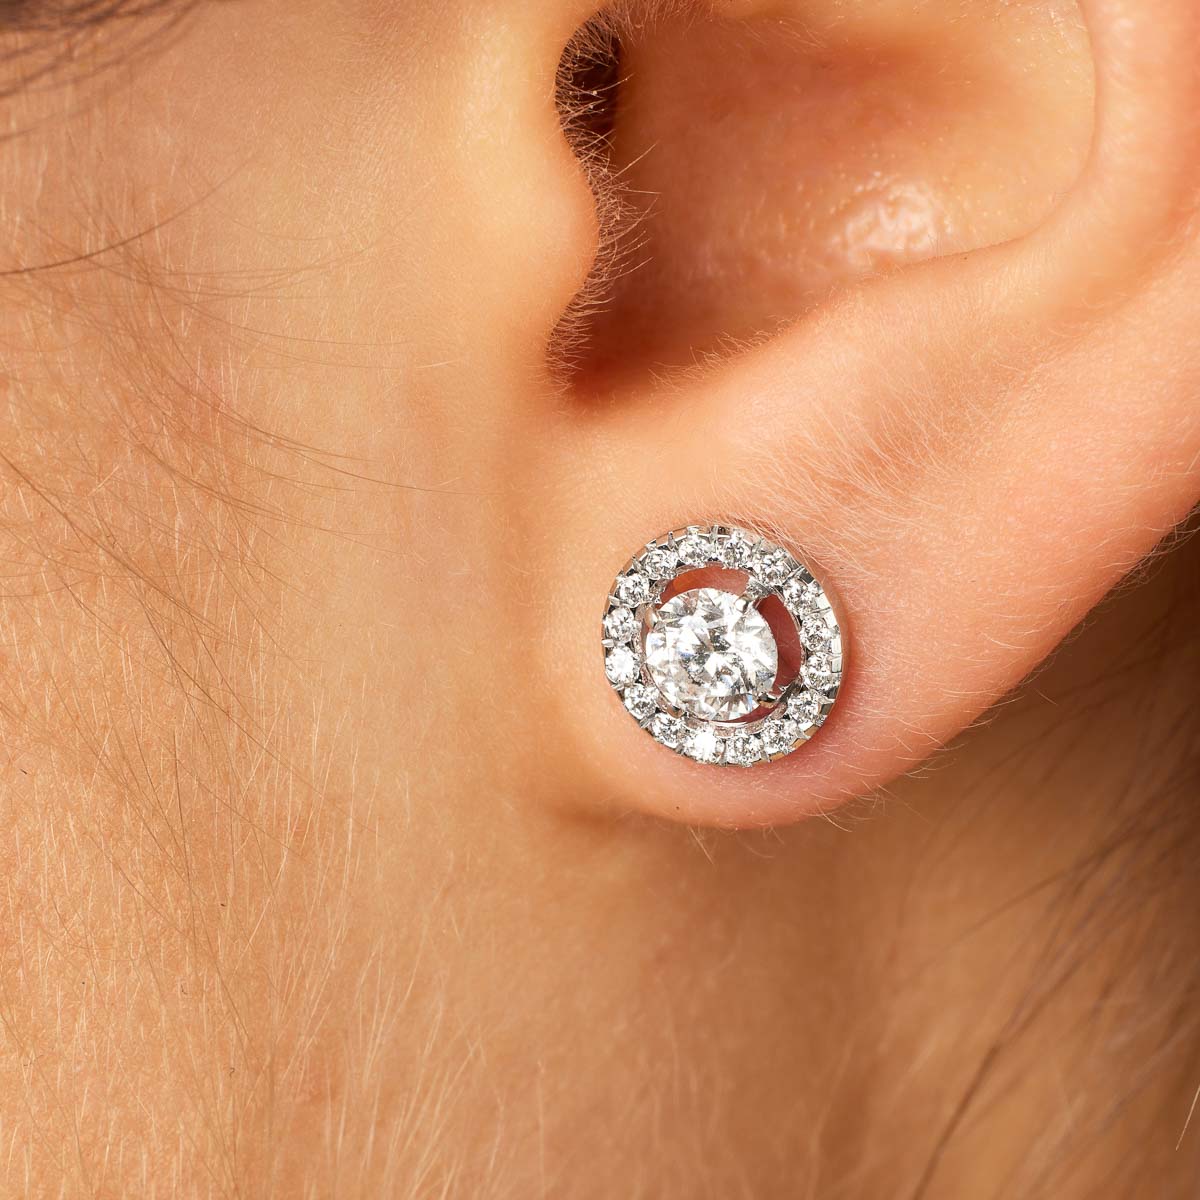 barbade-boucles-d'oreilles-diamants-style-classique-or-blanc-750-